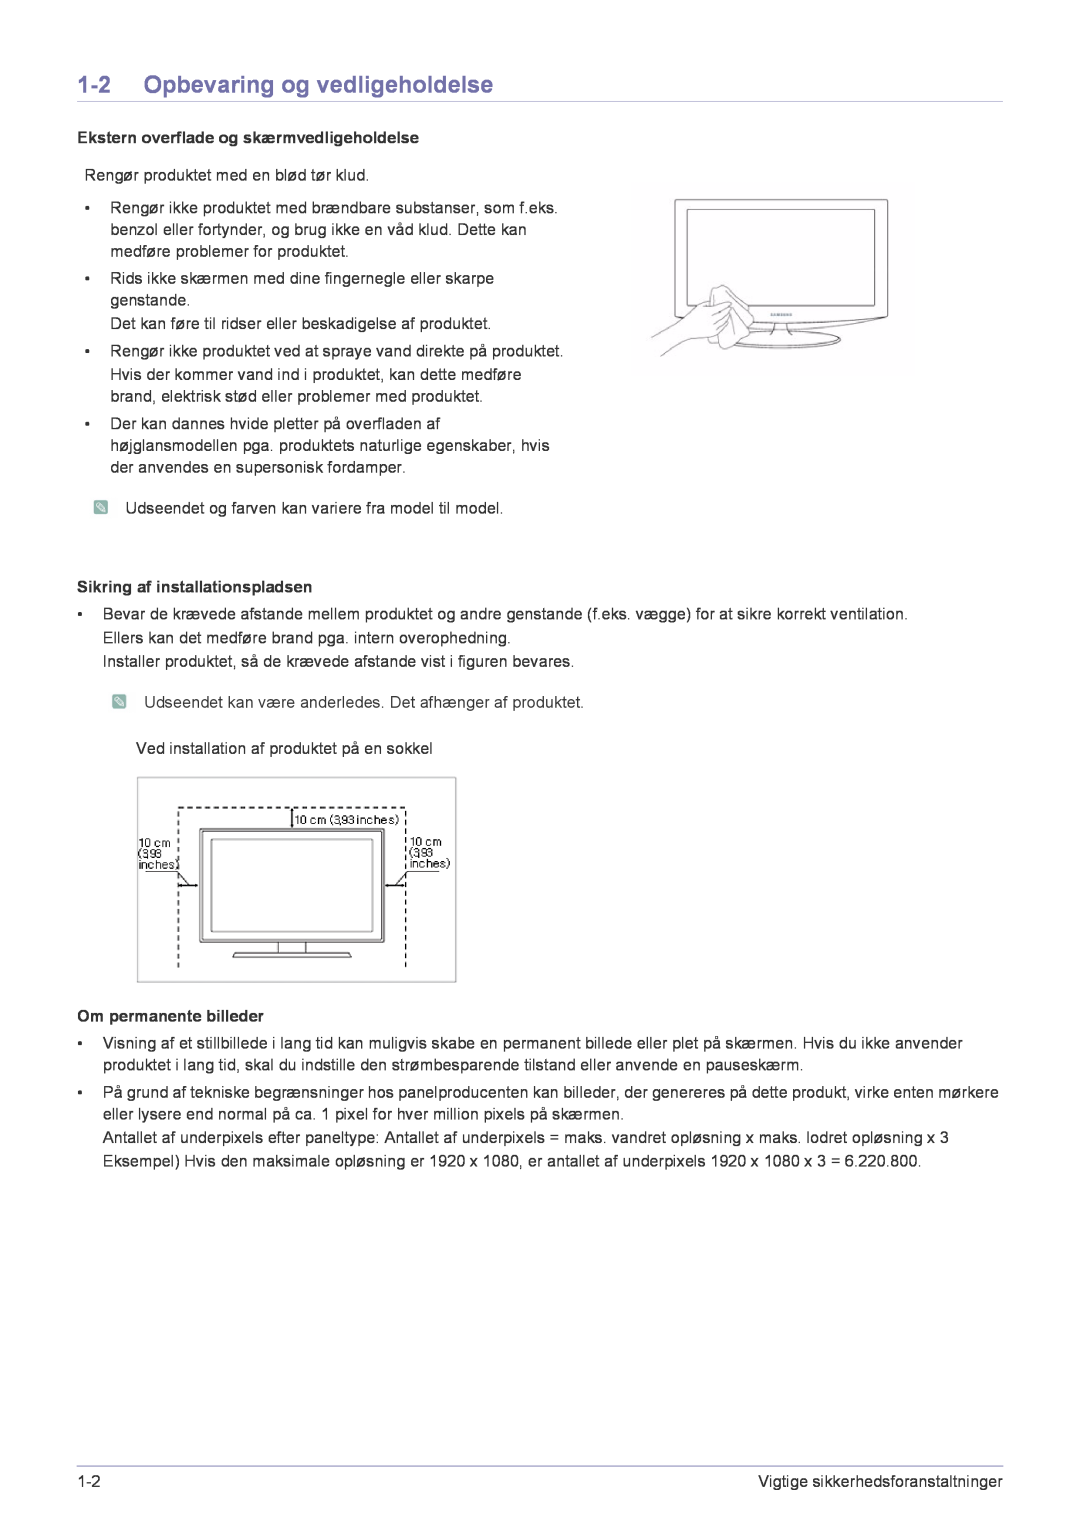 Samsung LS24X3HKFN/EN Opbevaring og vedligeholdelse, Ekstern overflade og skærmvedligeholdelse, Om permanente billeder 